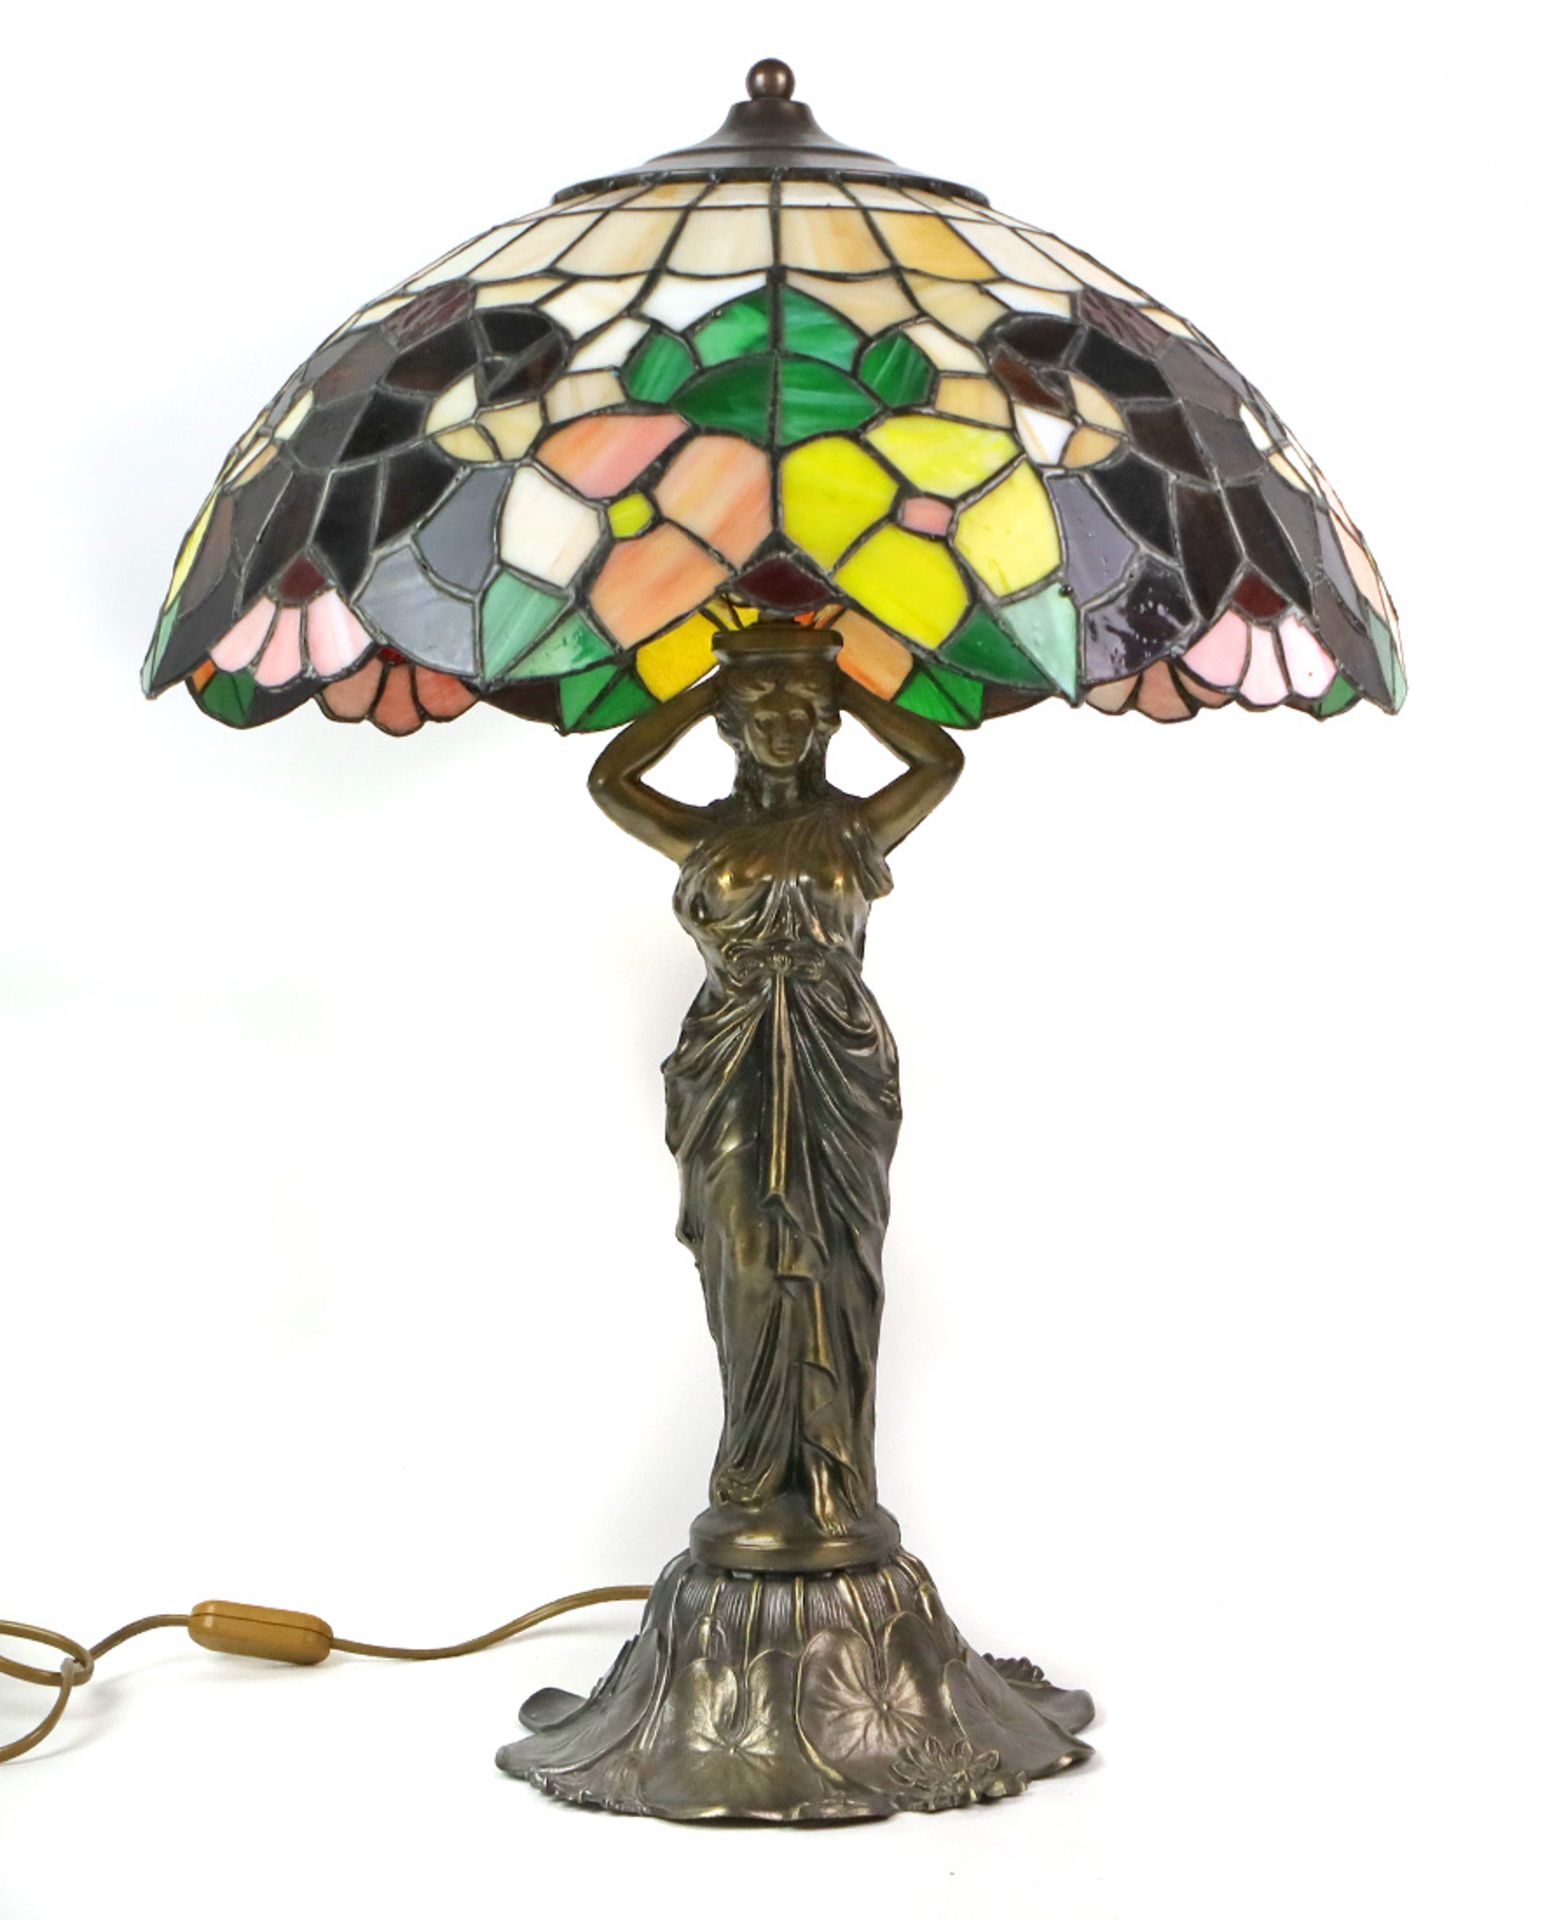 Tischlampe Tiffany Stilbleiverglaster Lampenschirm mit irisierenden perlmutt- sowie polychromen